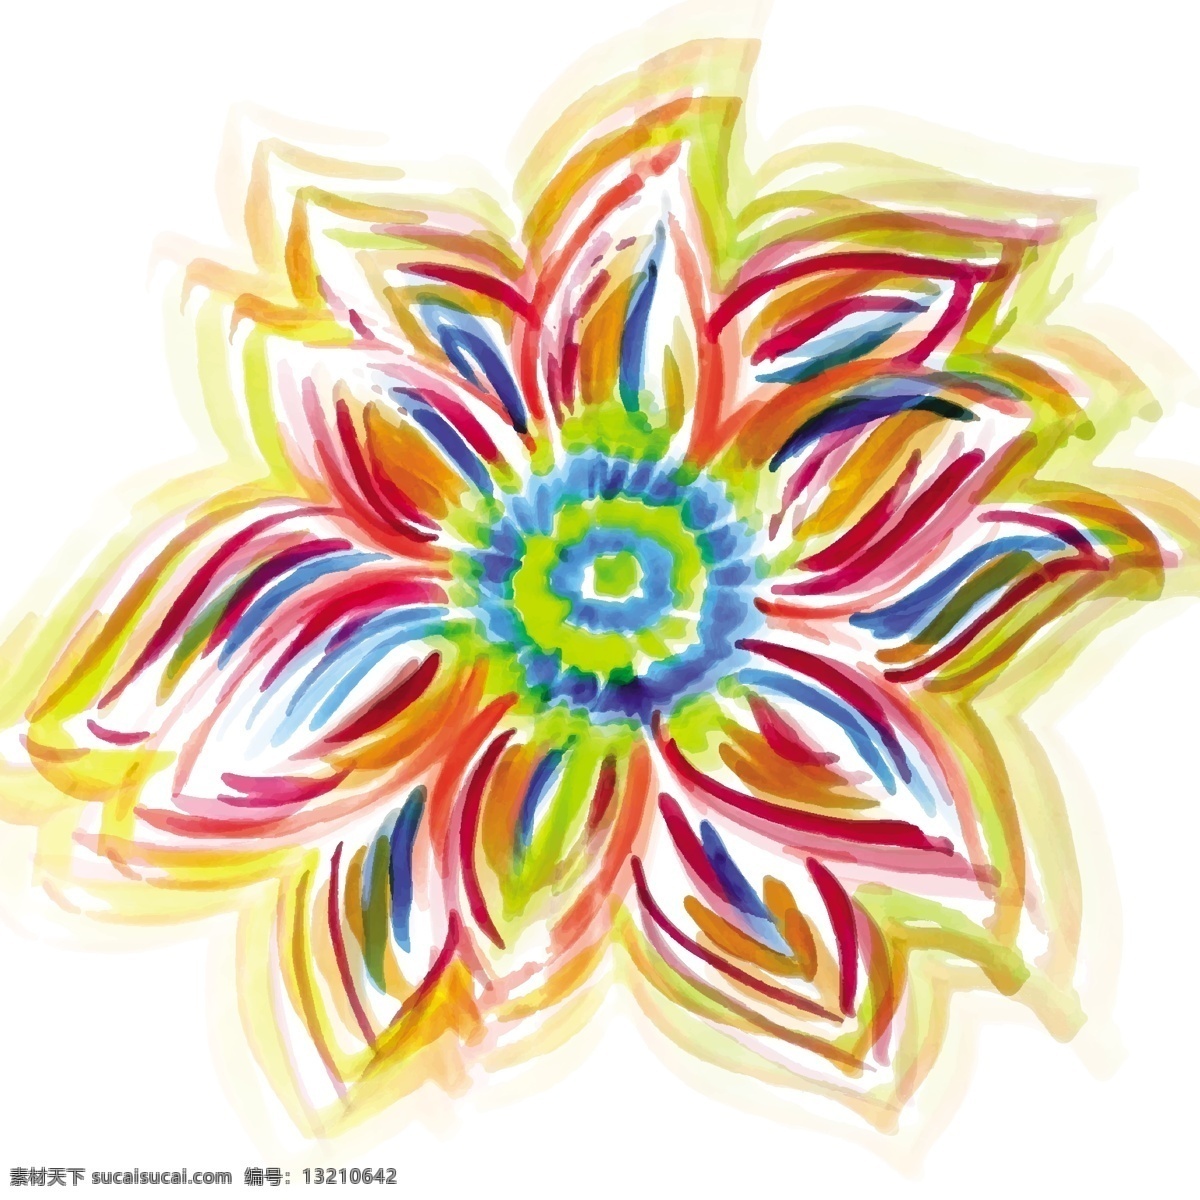 水彩花型设计 背景 花卉 抽象 水彩 自然 模板 油漆 壁纸 色彩鲜艳 装饰 色彩艳丽 鲜花 蓬勃发展